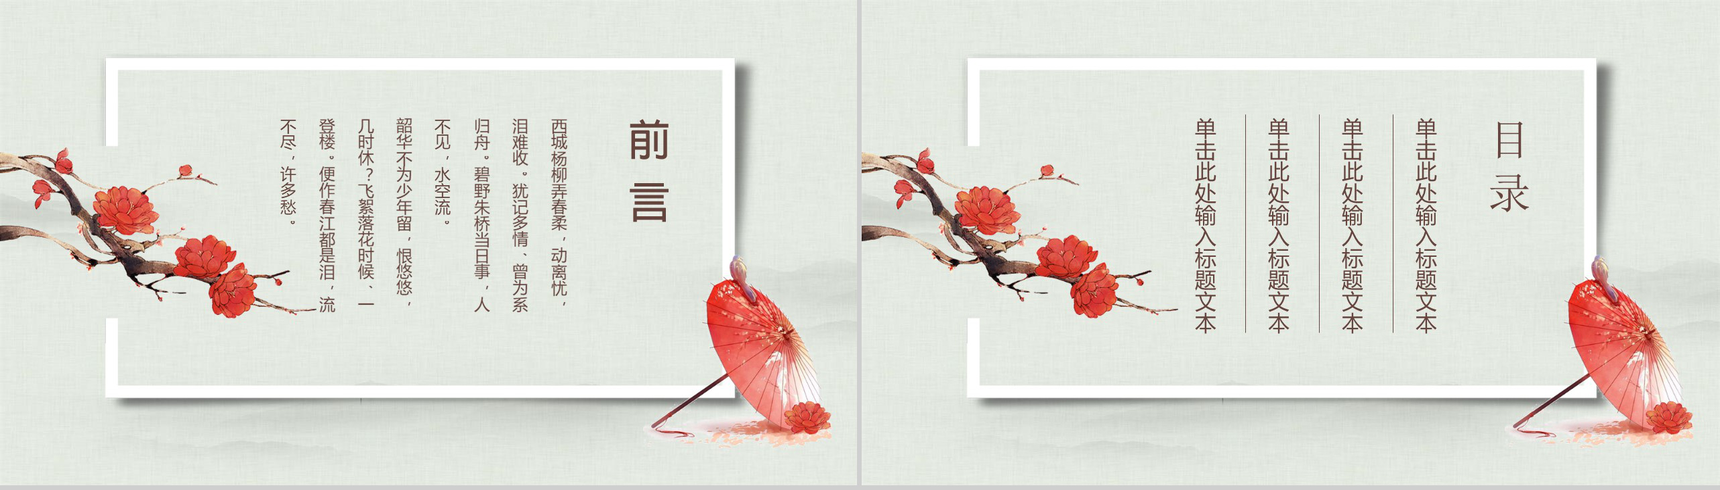 中国传统文化宫廷风传统文化PPT模板-2